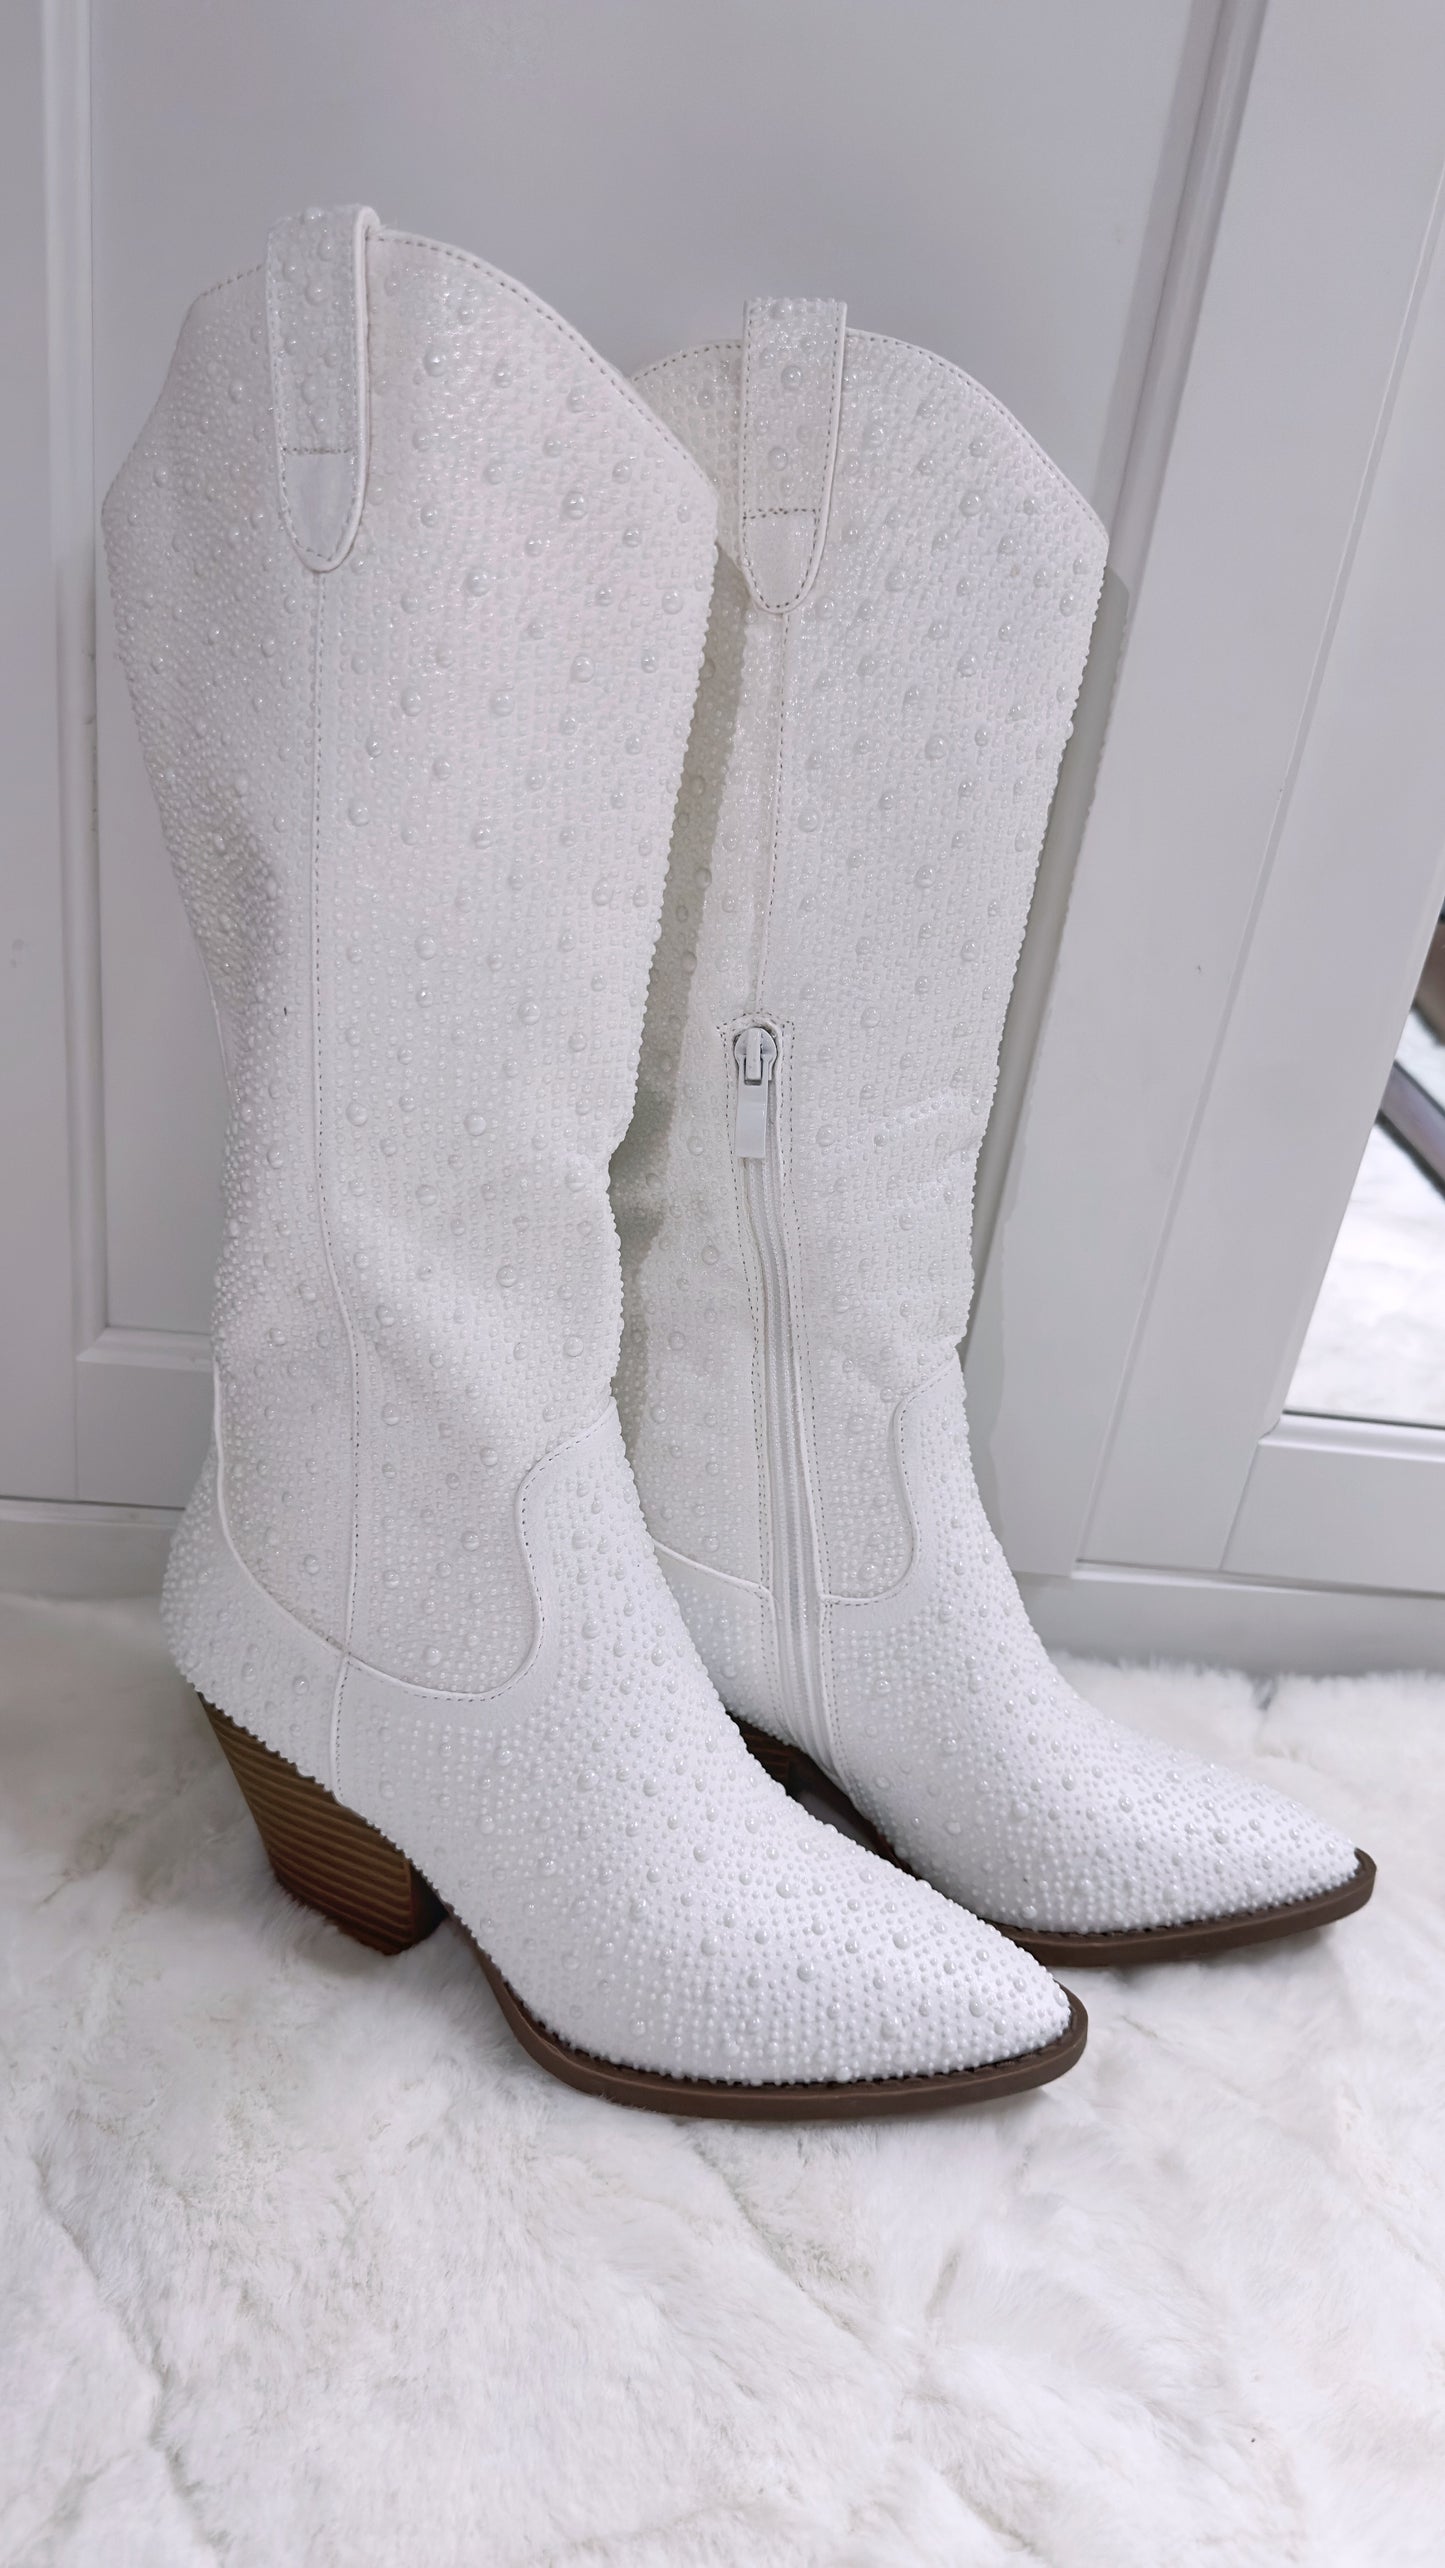 Anahi Rhinestone Western Boots - White